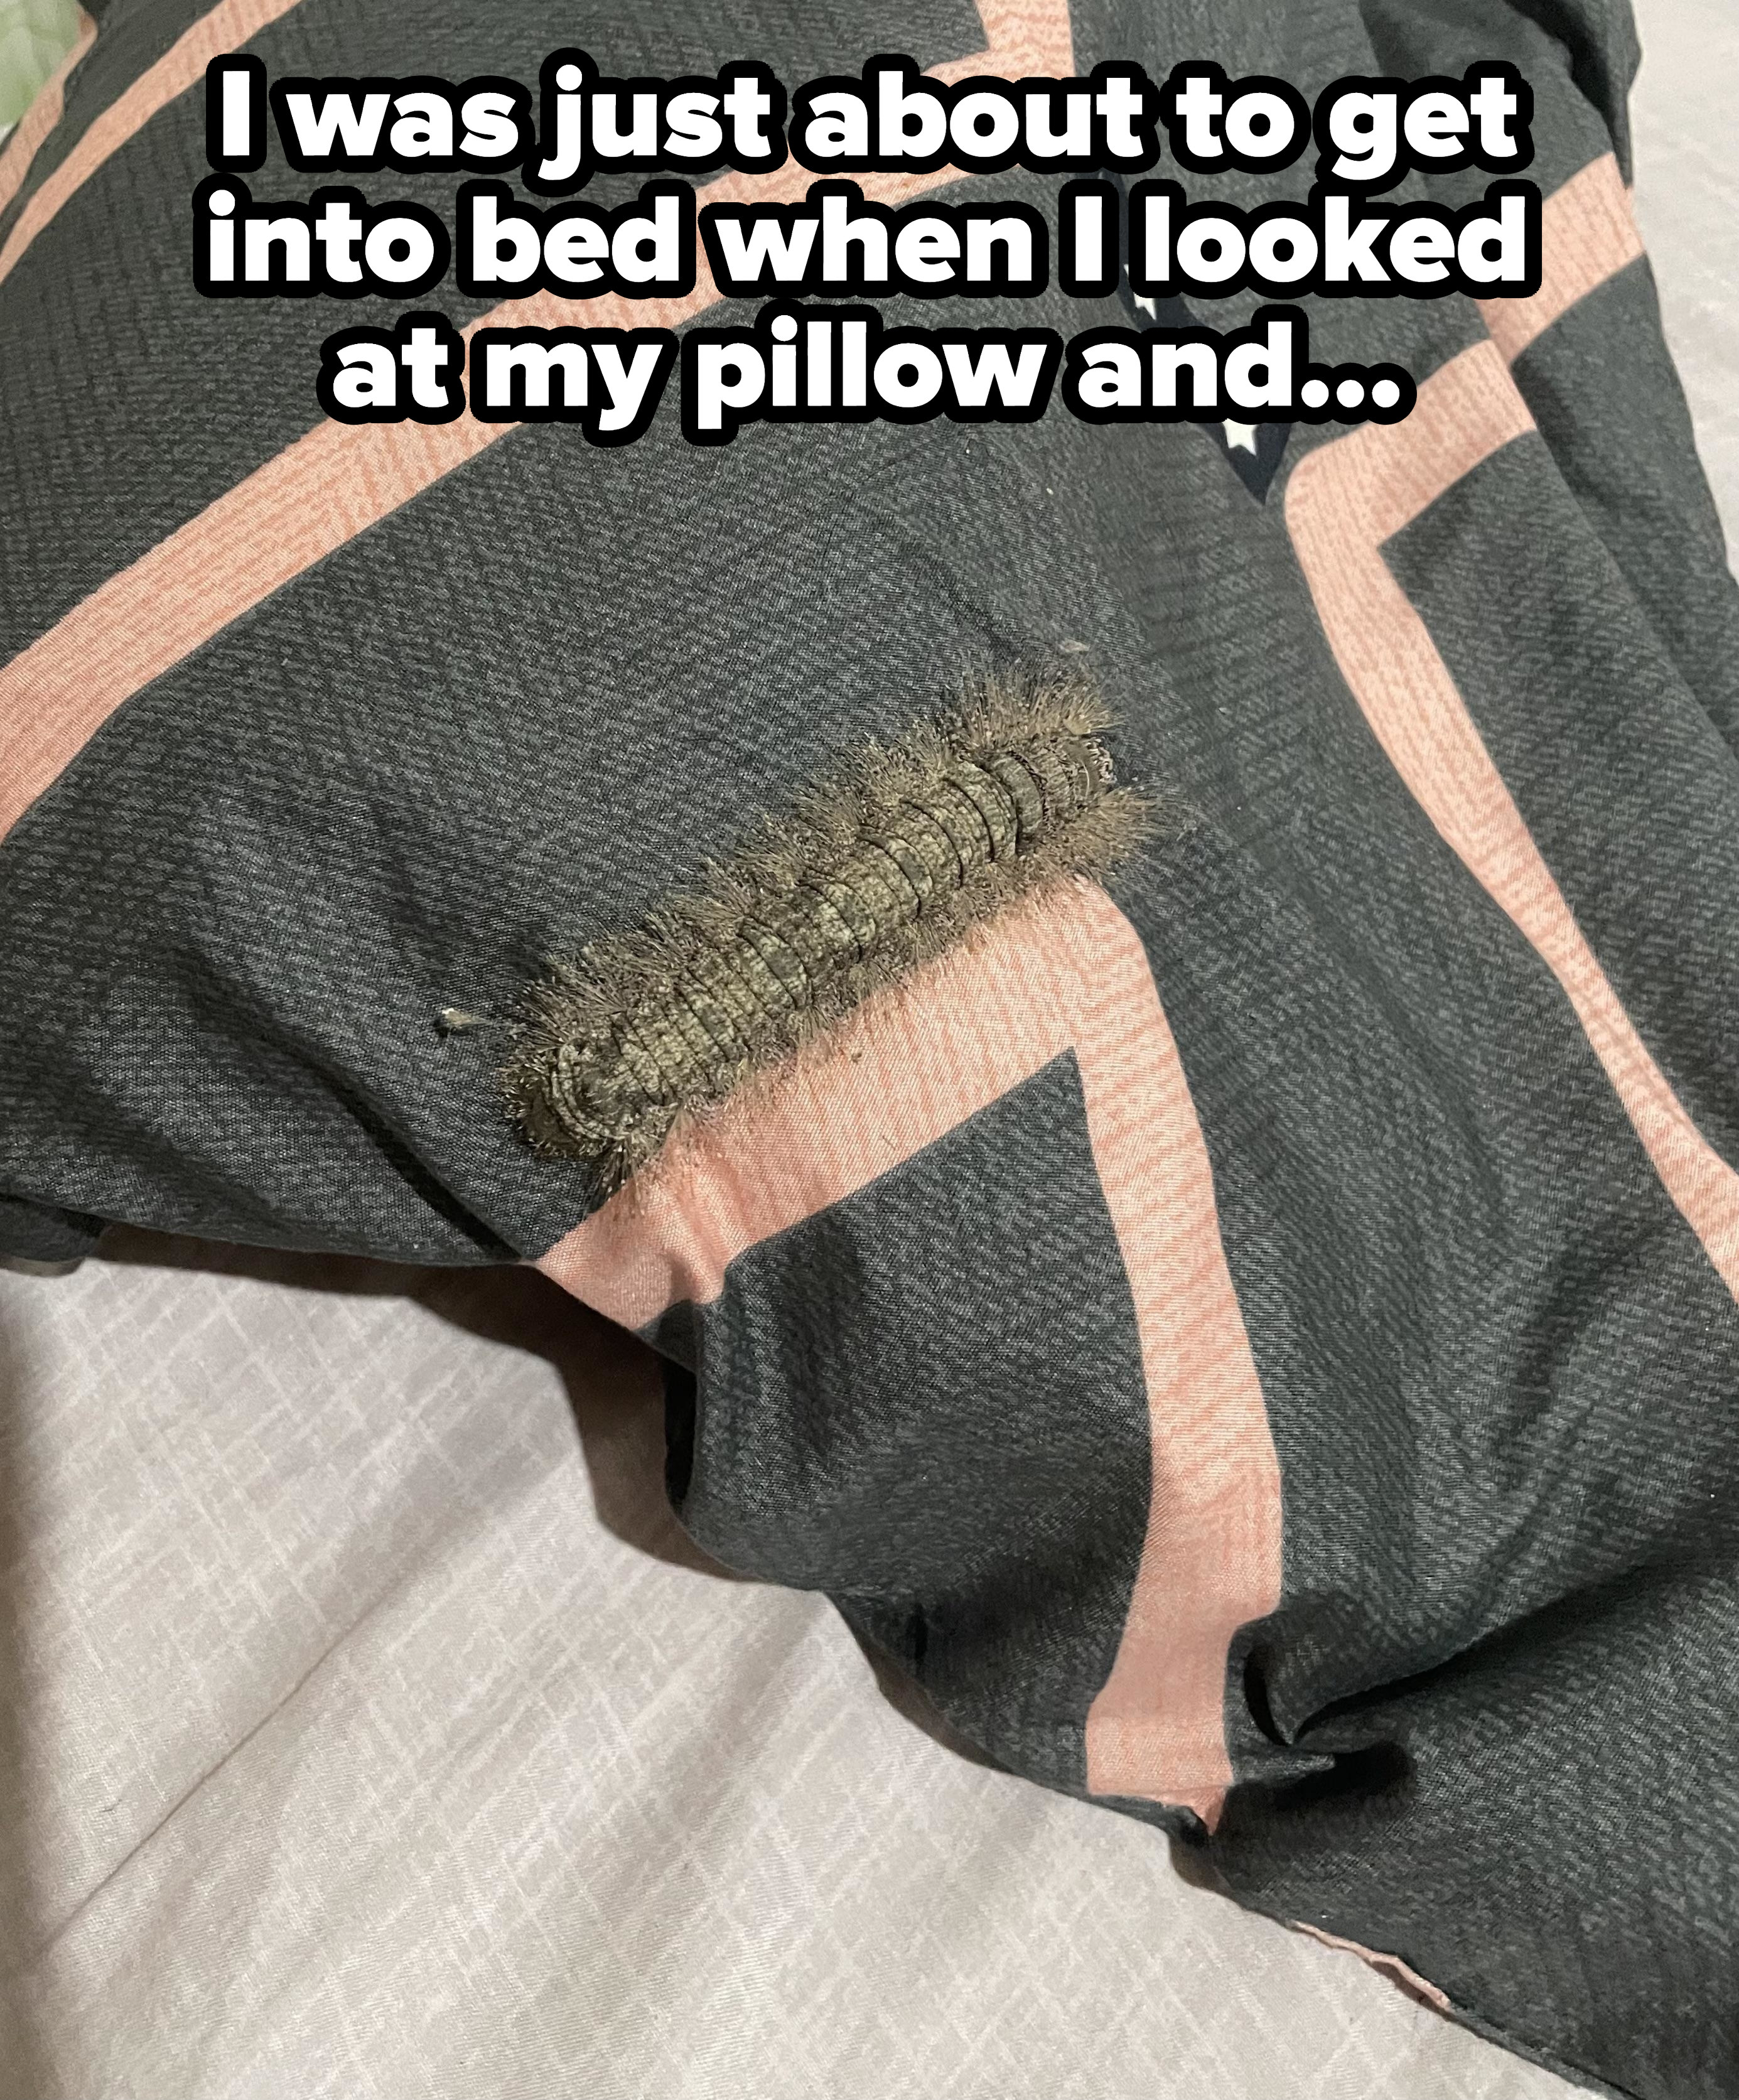 Large caterpillar on a pillow